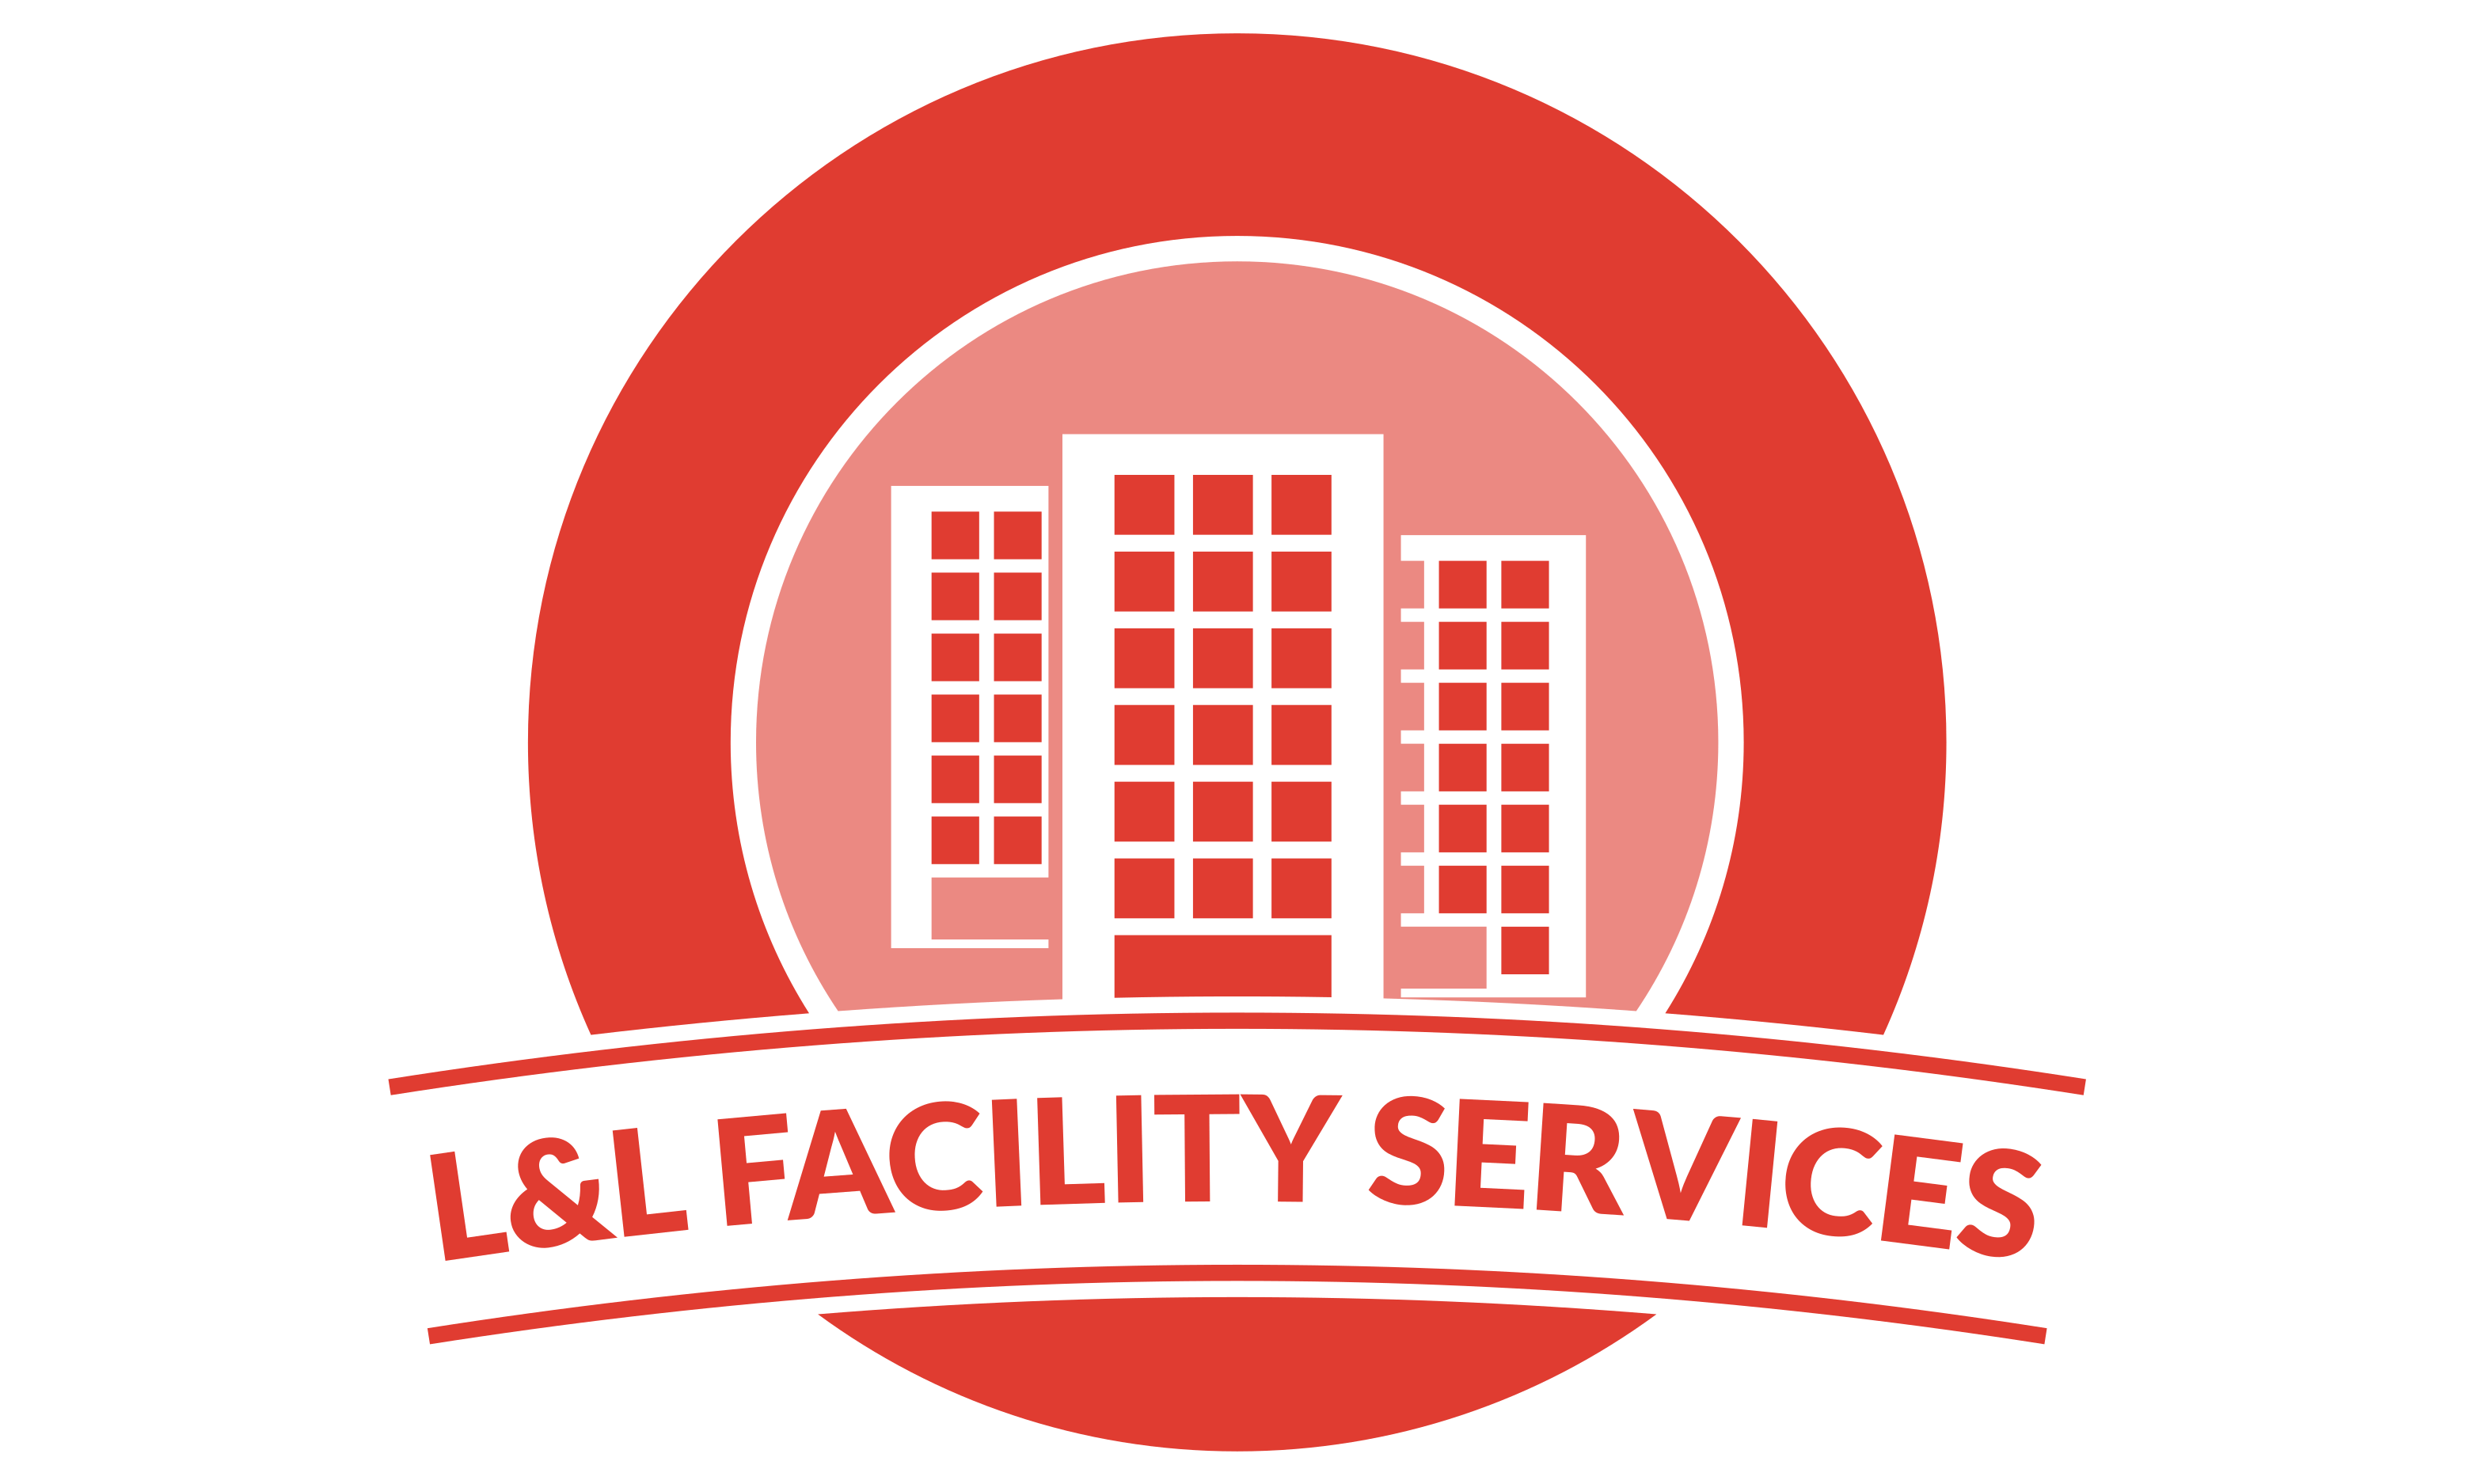 L&L Facility Services